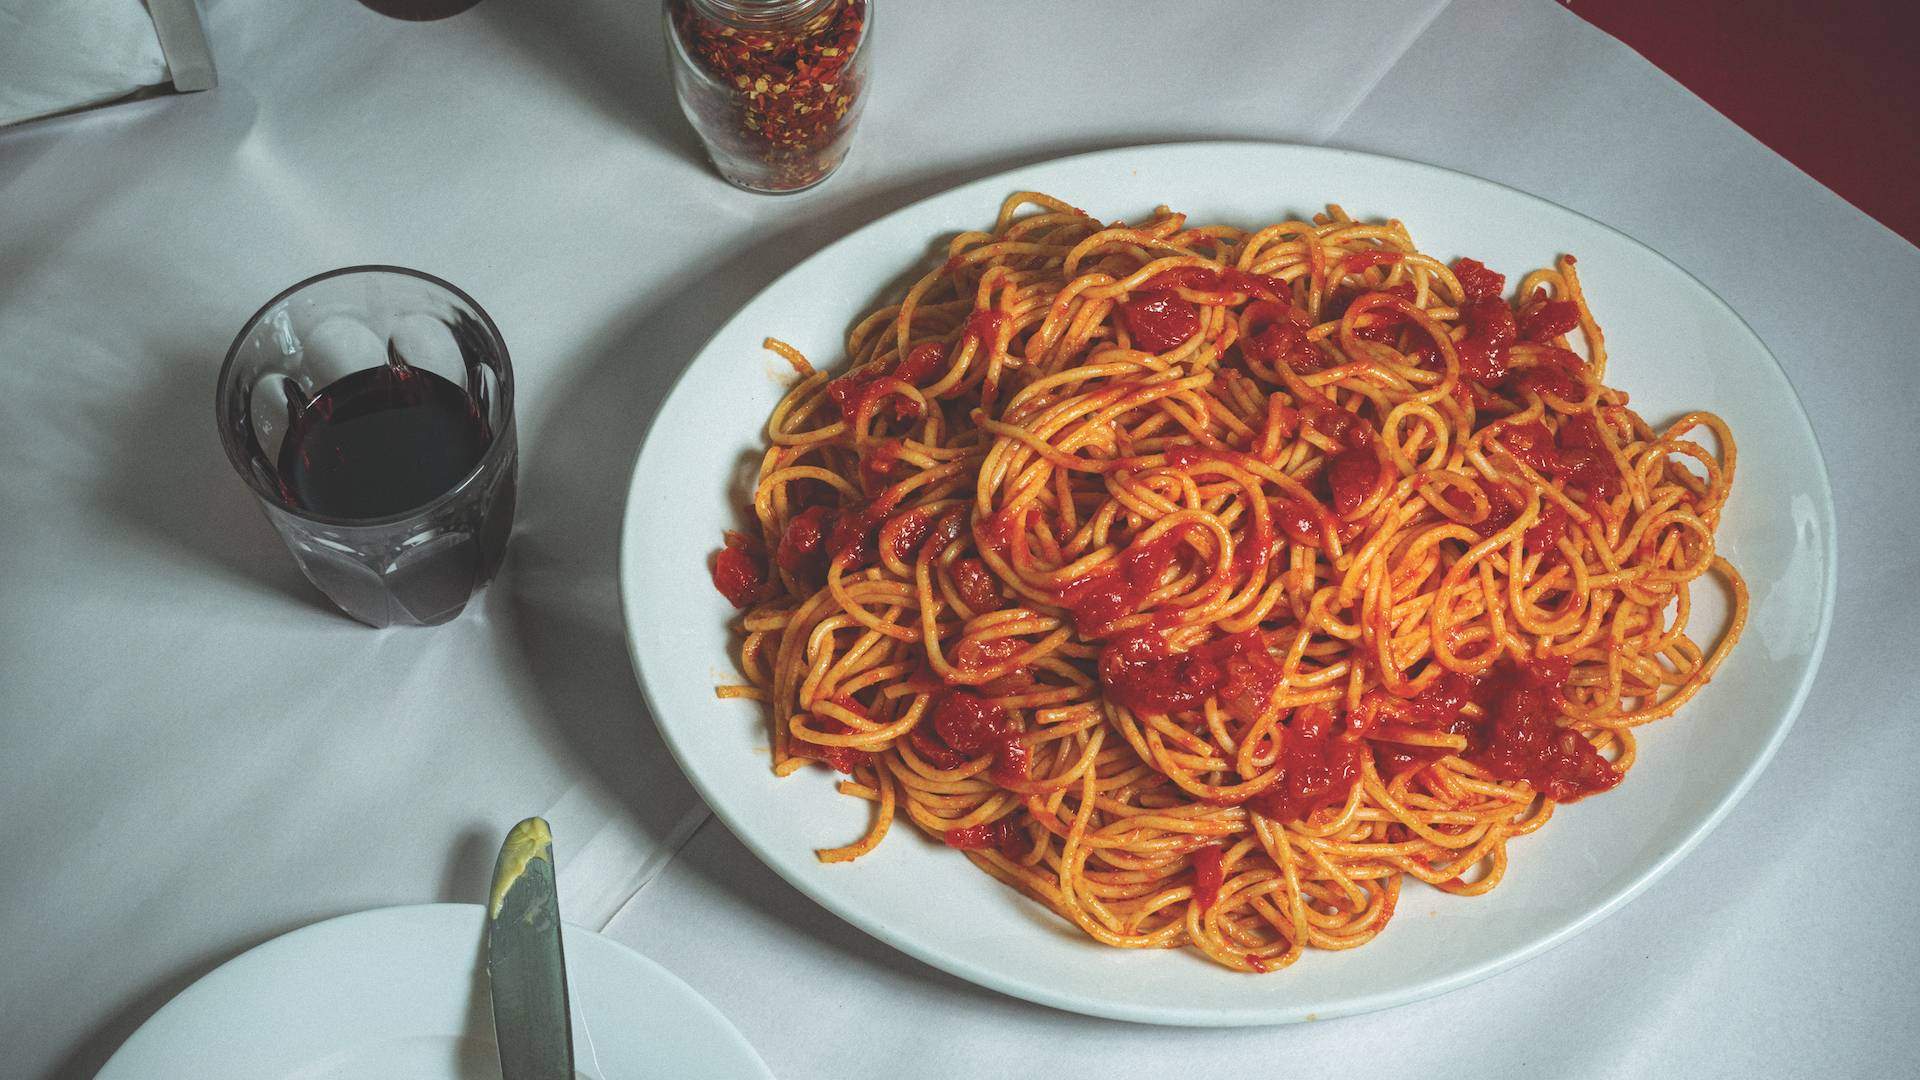 The Big Spaghetti 2022